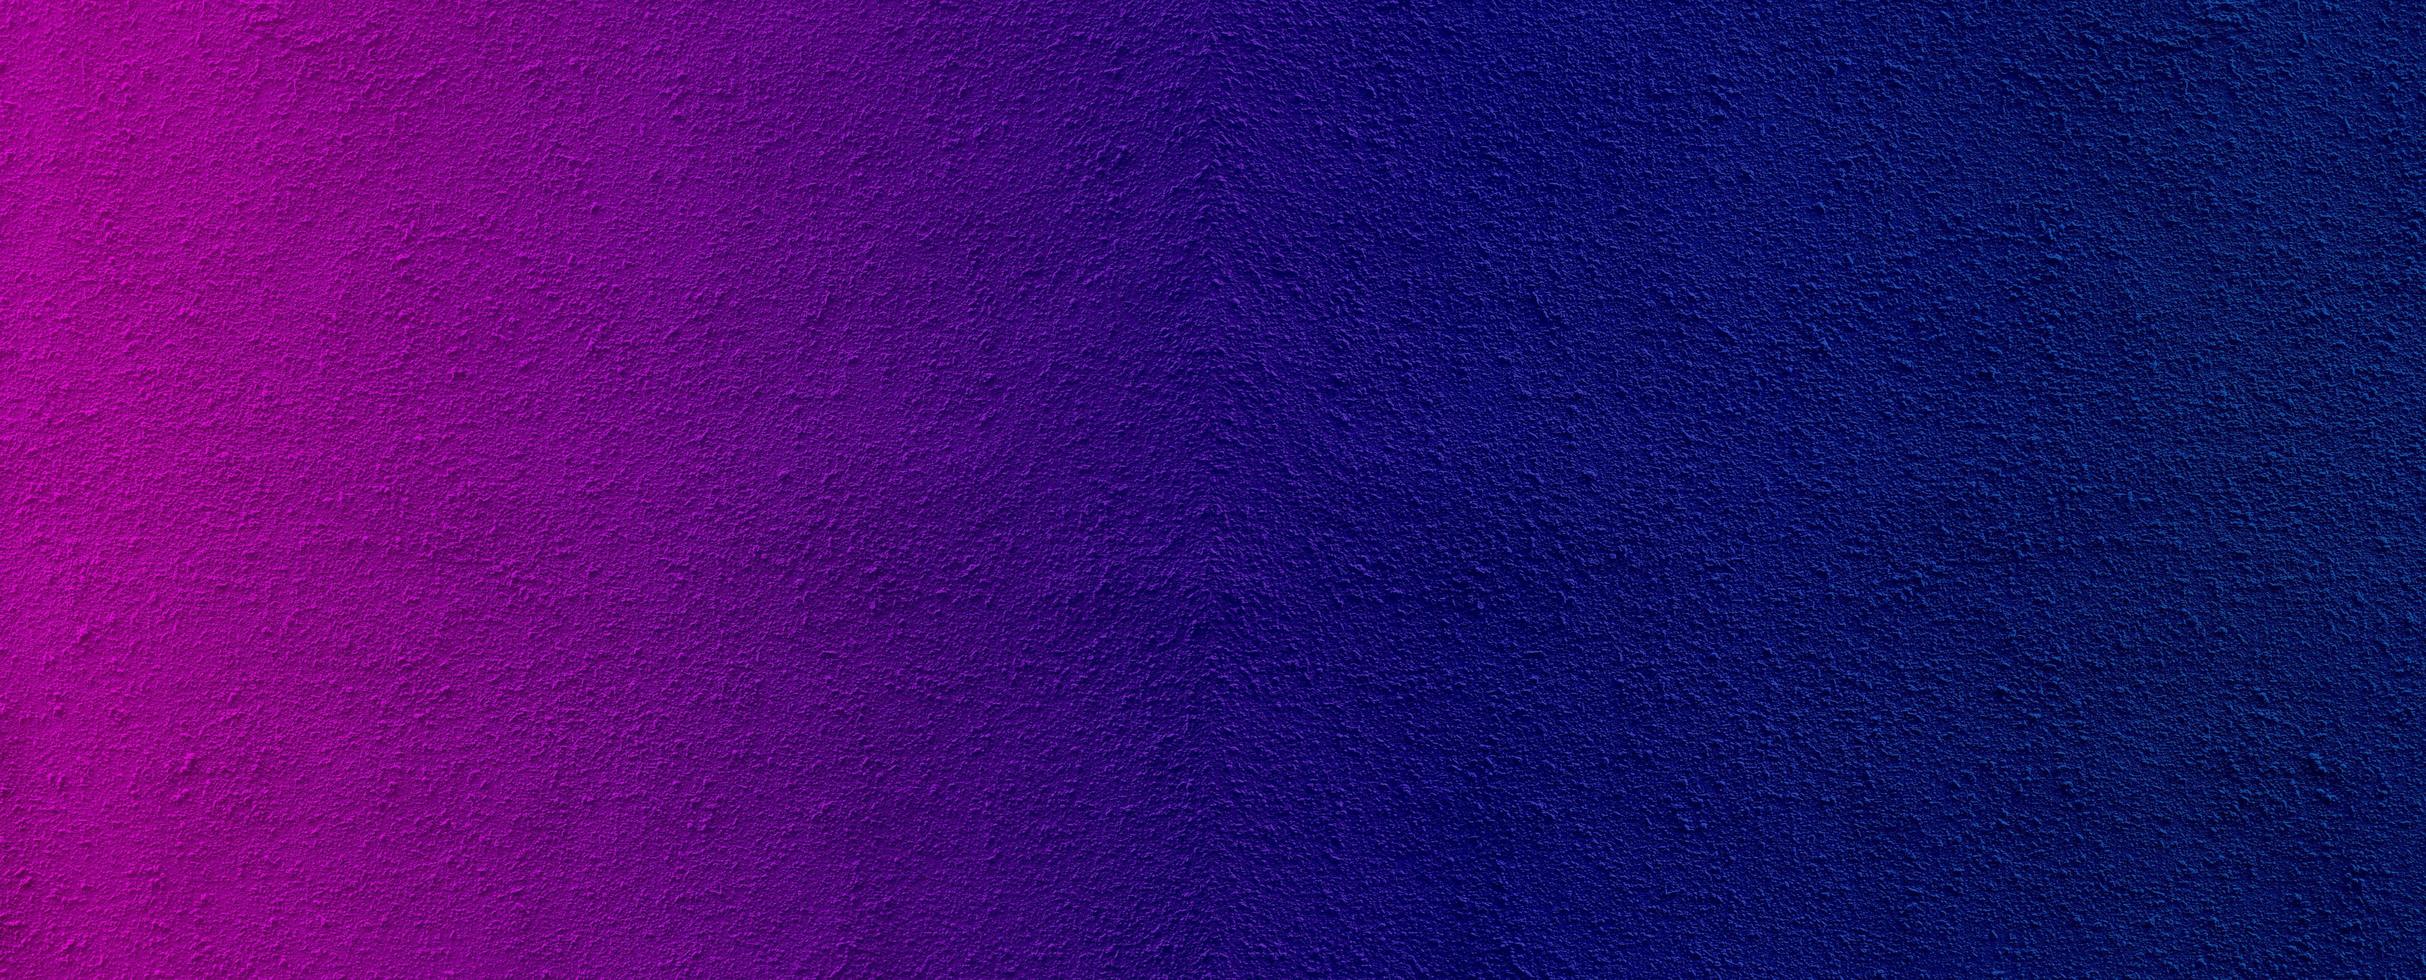 kleurrijke cement muur textuur achtergrond ruwe textuur foto